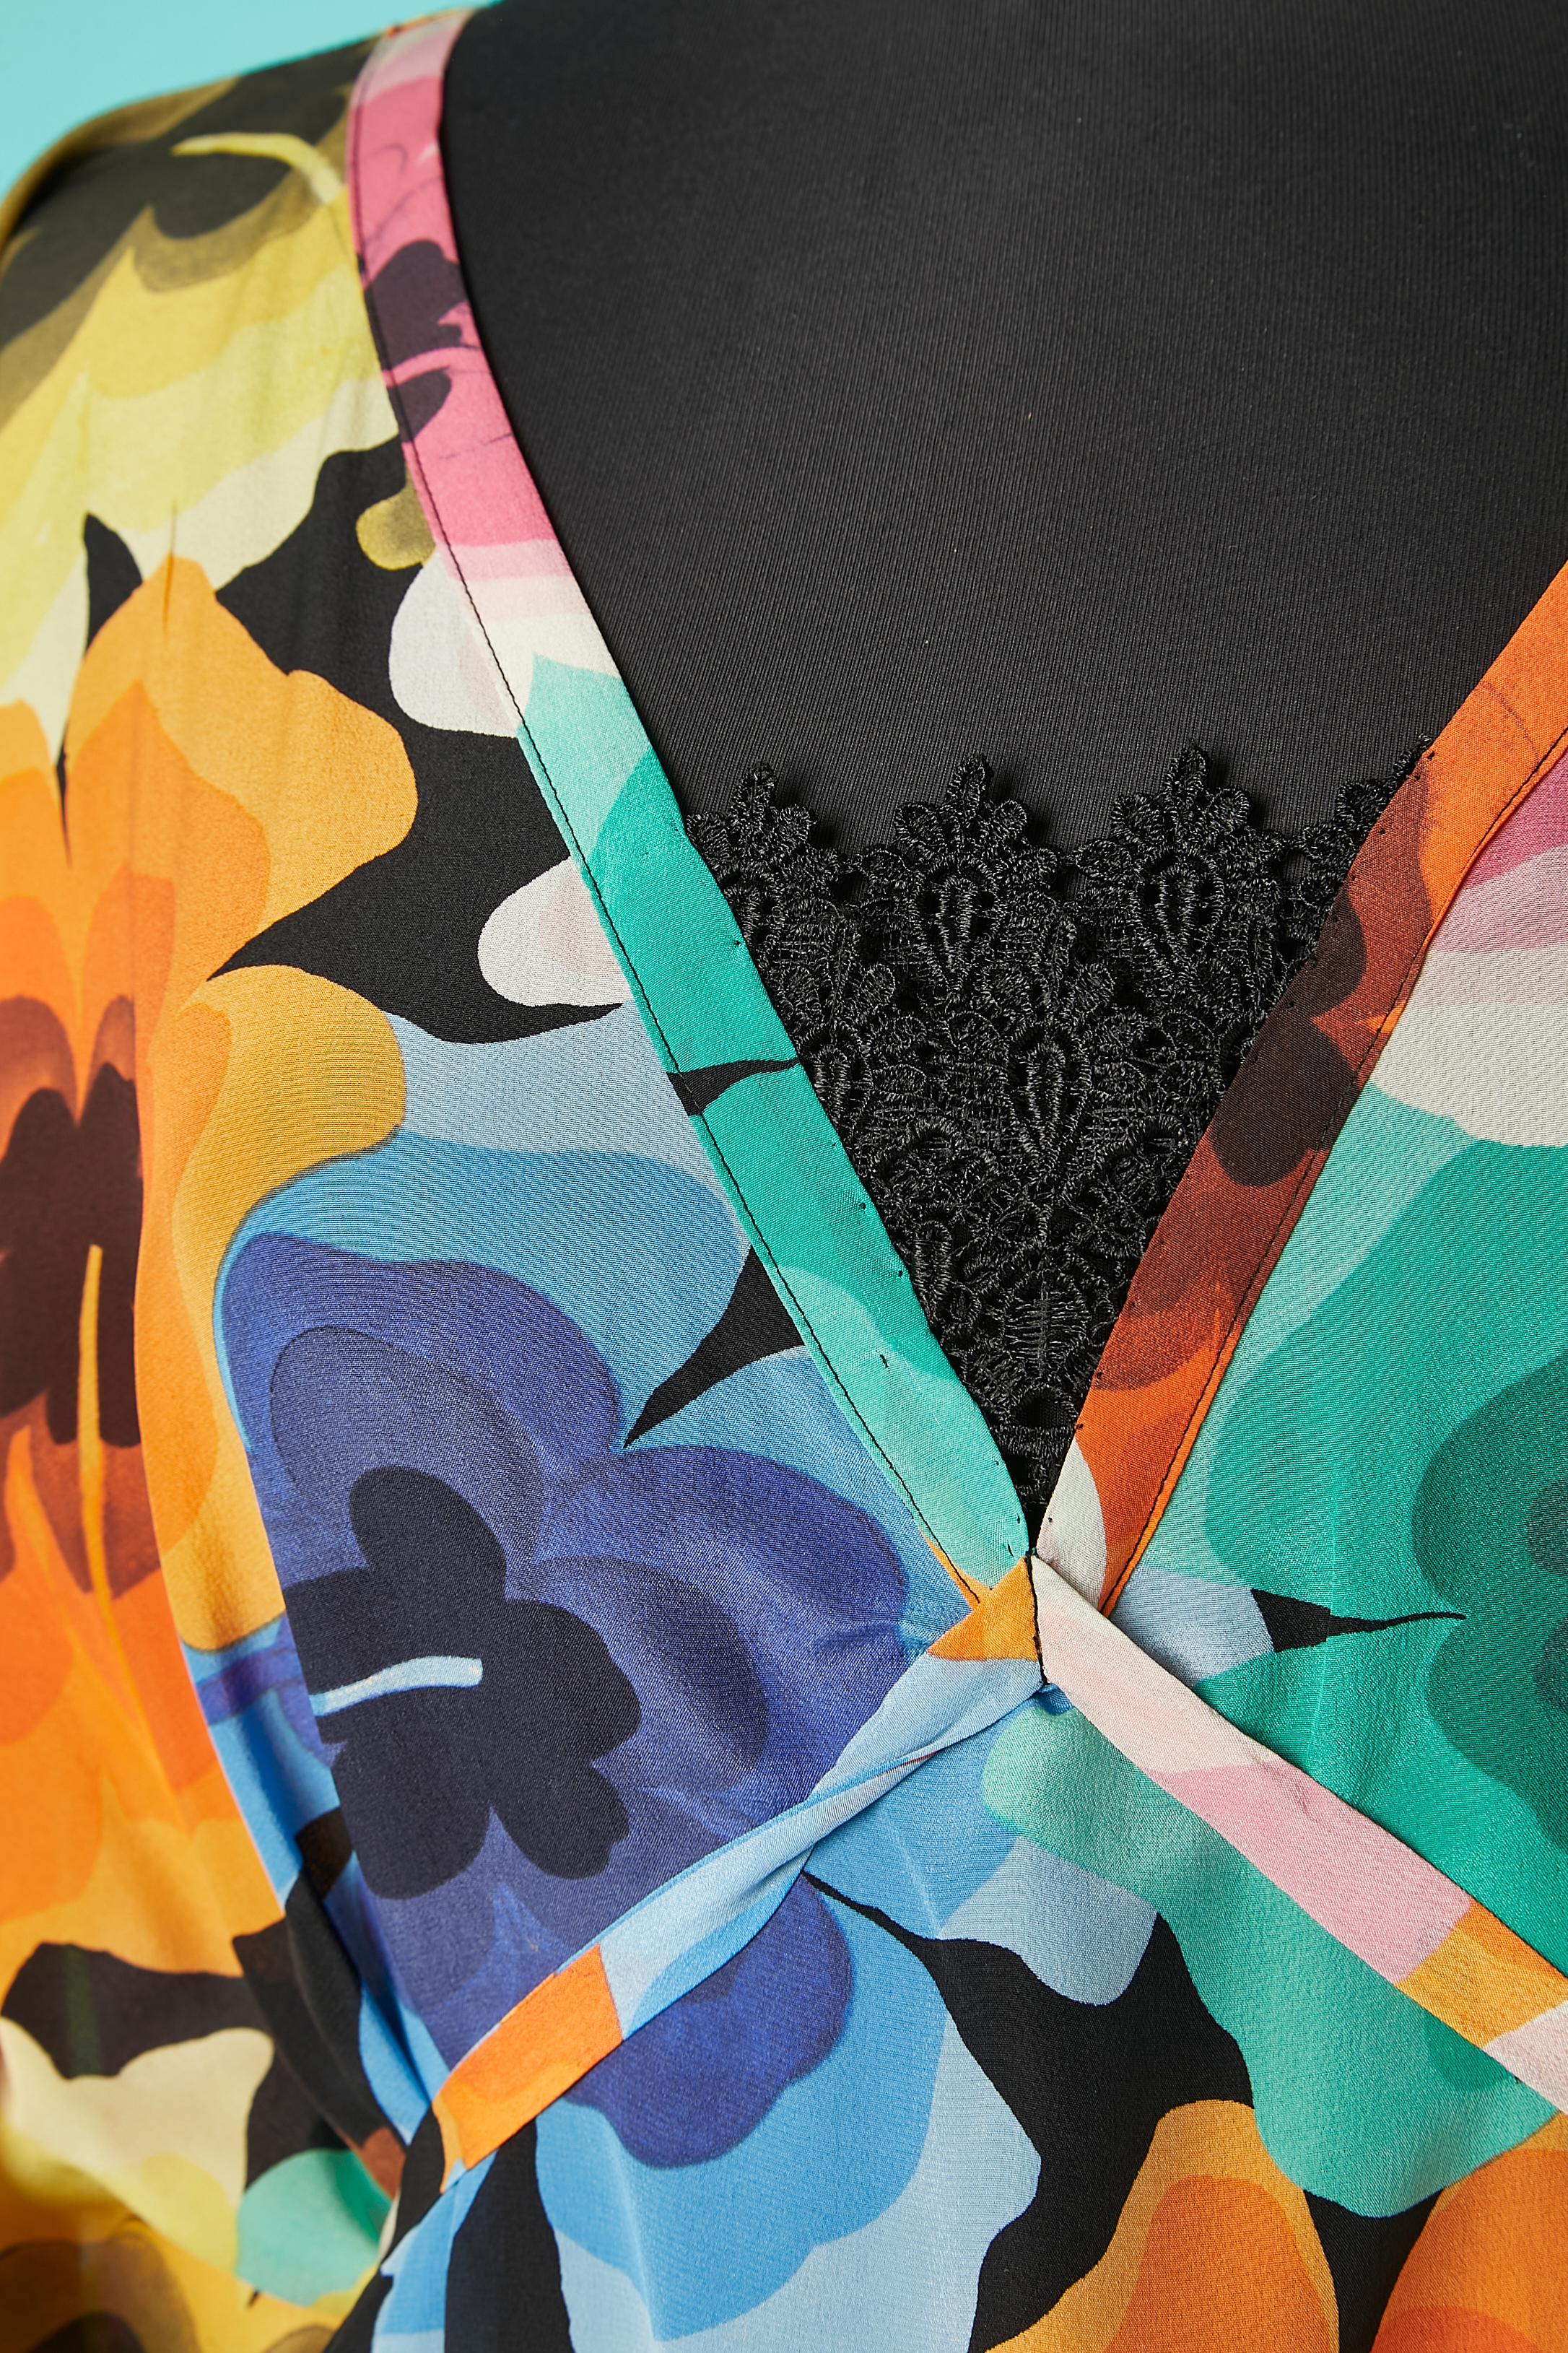 Poncho-Kleid mit mehrfarbigem Blumendruck und schwarzem Spitzendetail in der vorderen Mitte. Kein Etikett für die Stoffzusammensetzung, aber wahrscheinlich Seide. 
Die gleiche Stoffschnur ist in der vorderen Mitte befestigt und in der hinteren Mitte